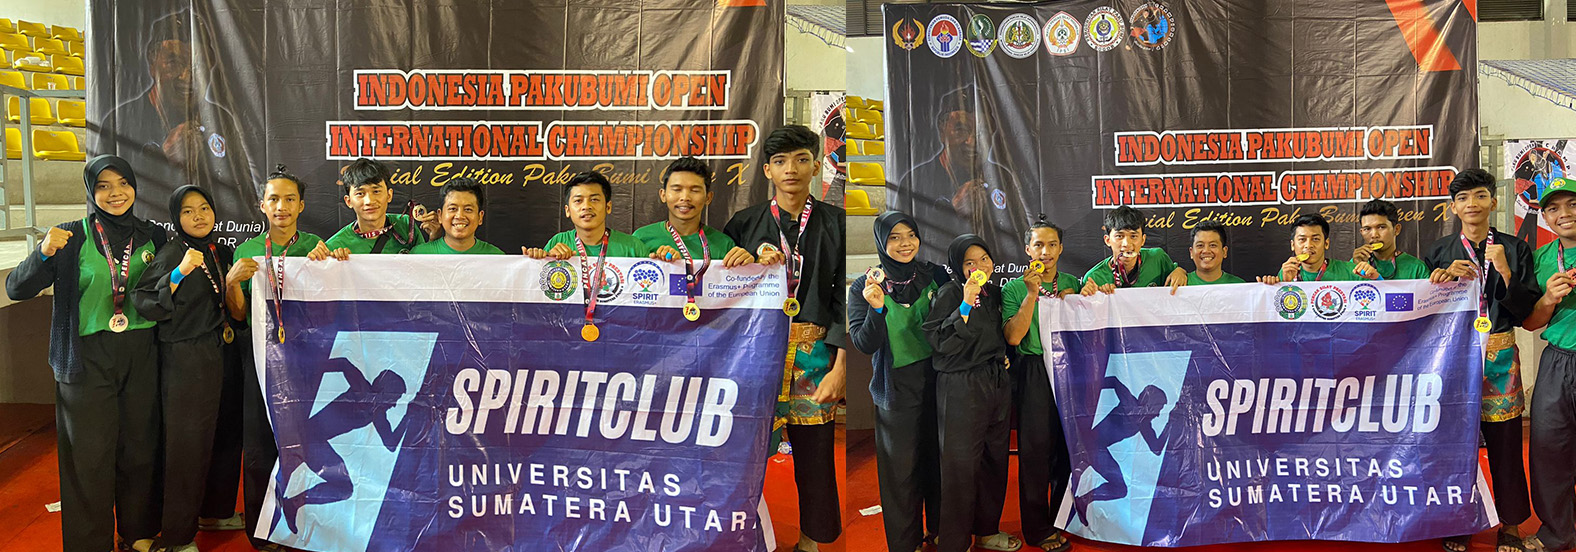 Universitas Sumatera Utara USU SPIRIT Club in the field of pencak silat competes in an international championship